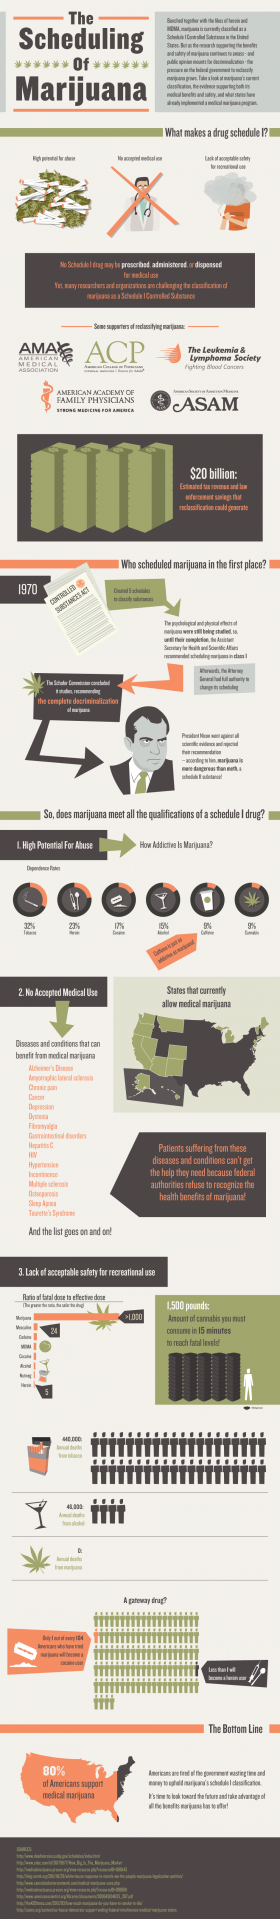 Infographic: Arguing Against Schedule I Marijuana